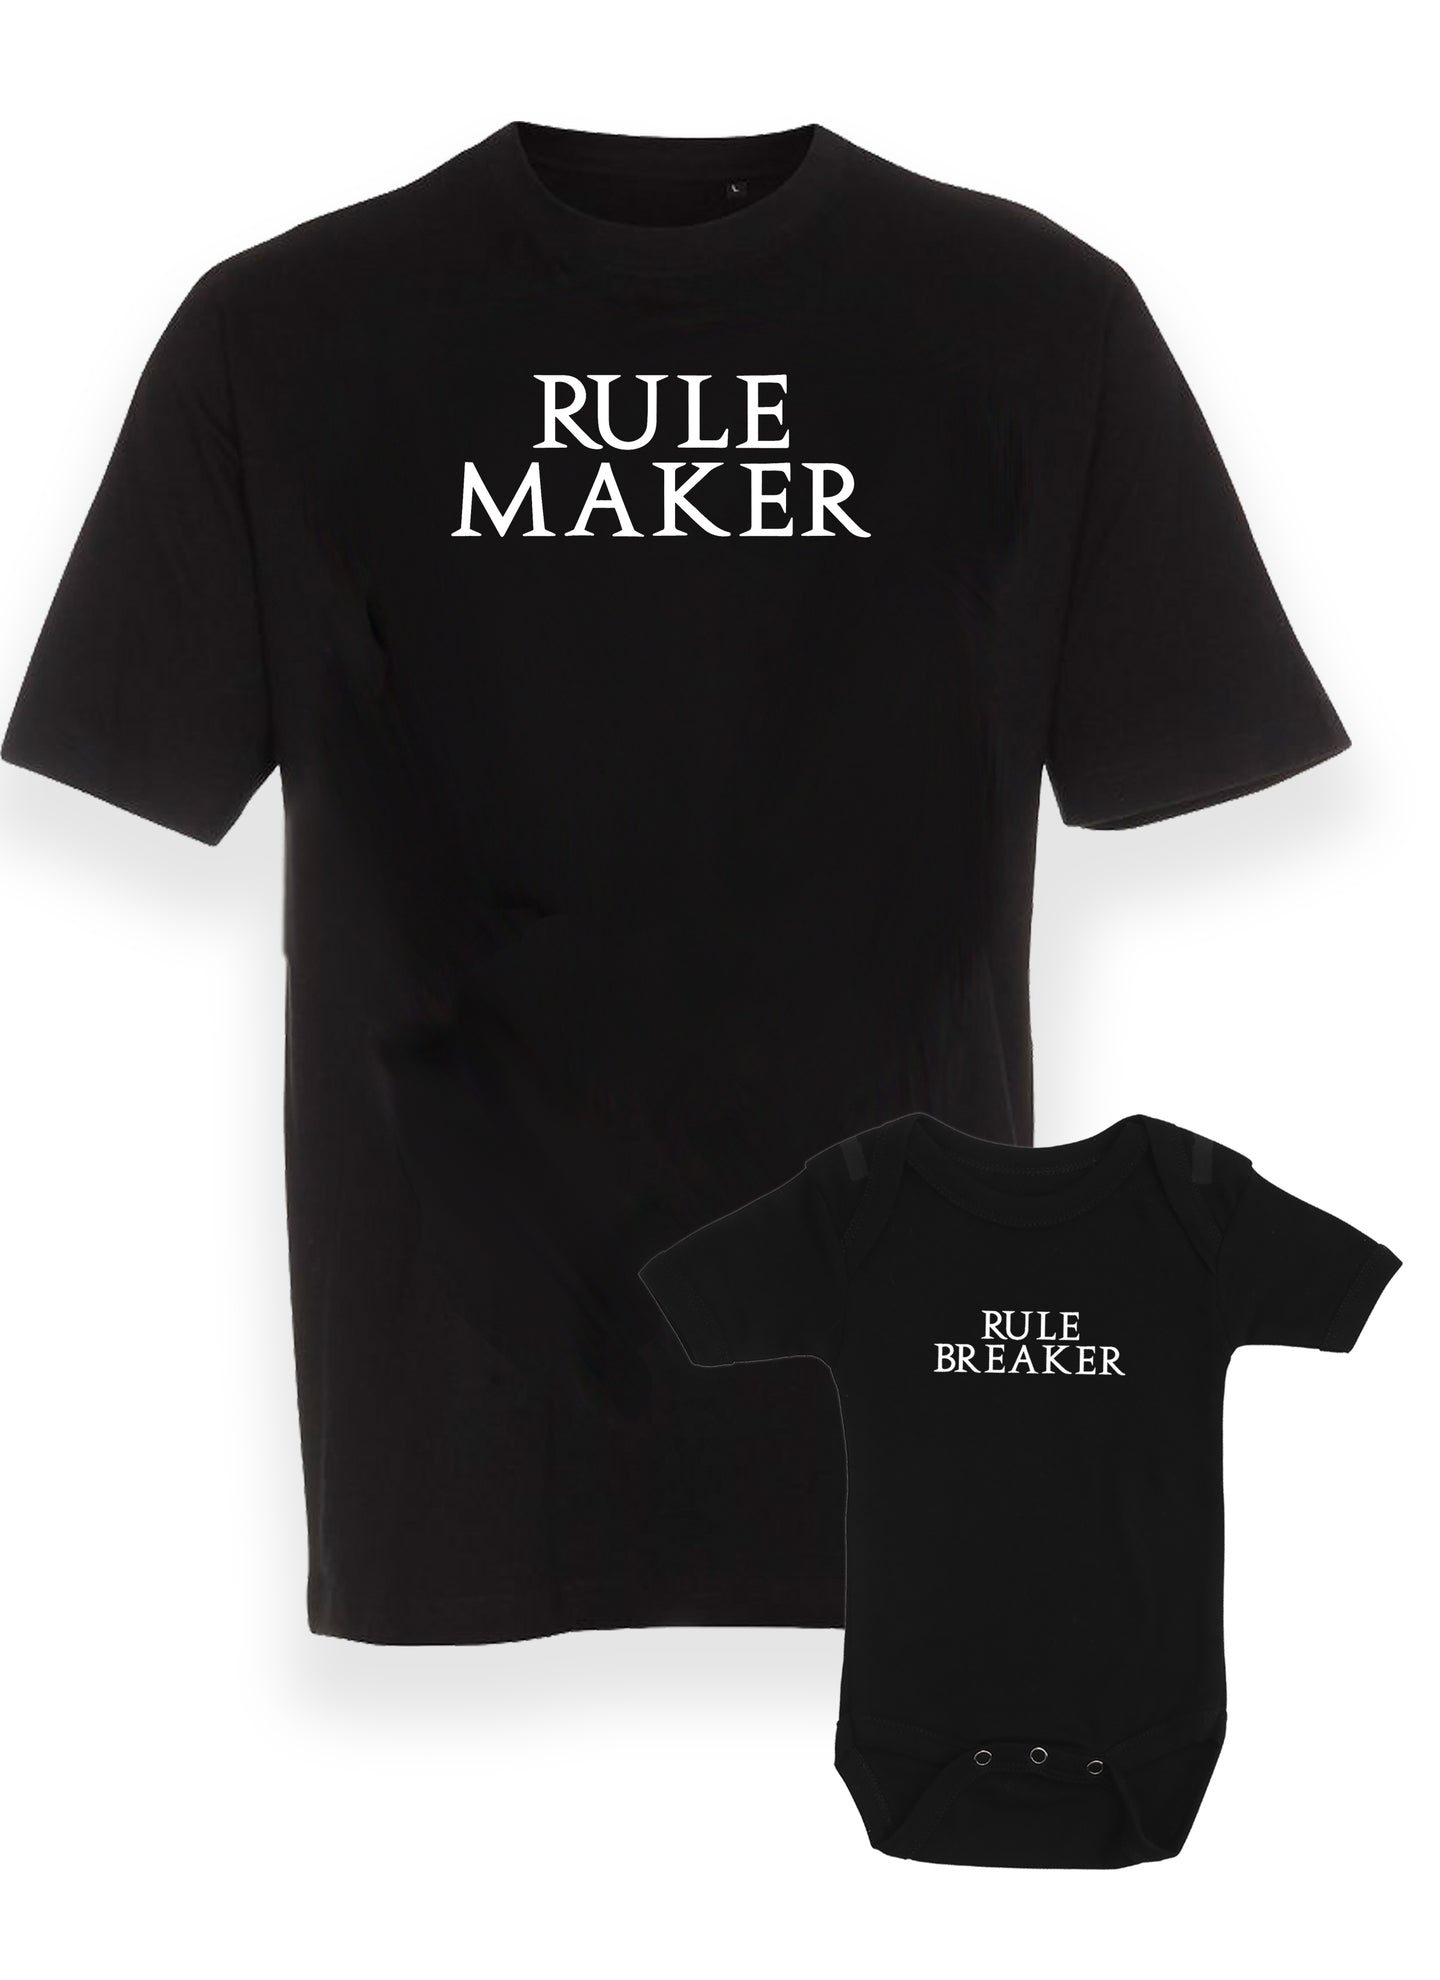 Rule maker & rule breaker